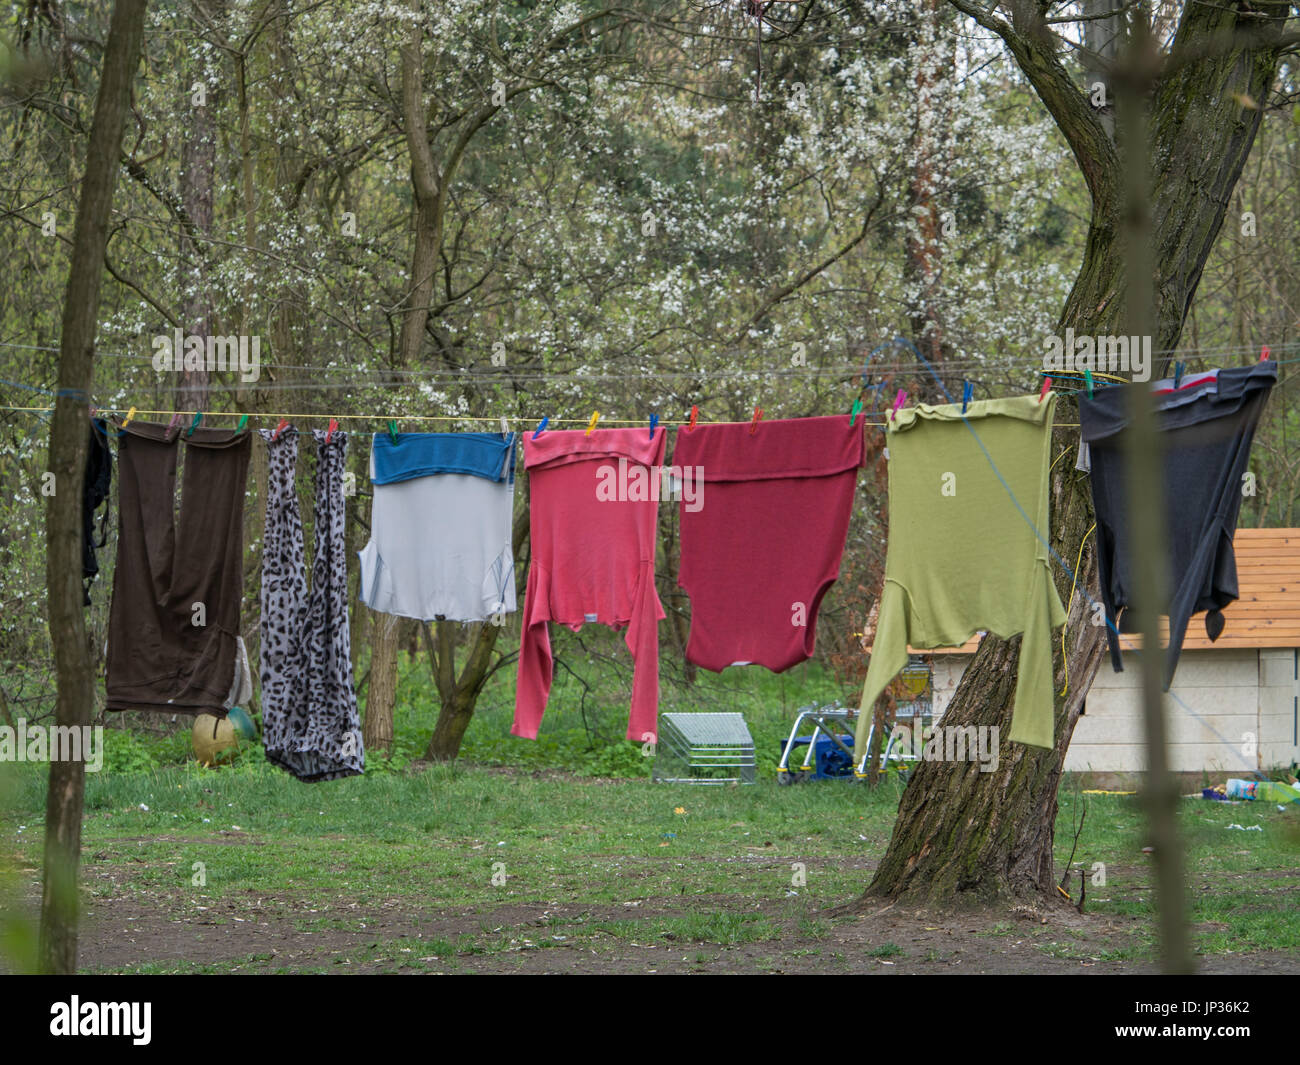 Servicio de lavandería colorida ropa de secado en el jardín Foto de stock